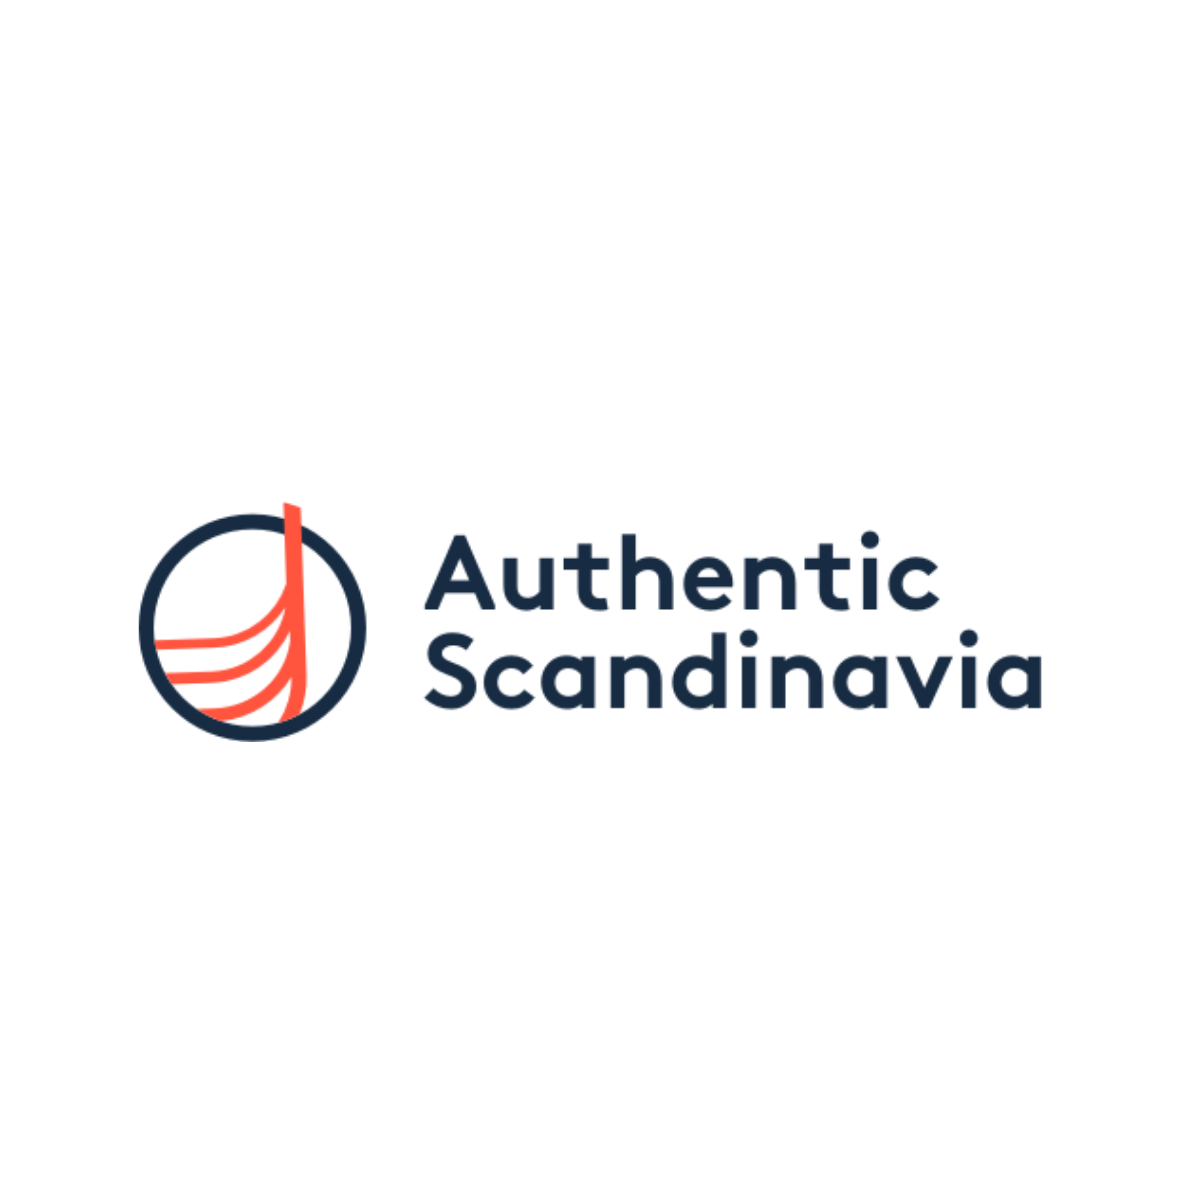 Authentic Scandinavia